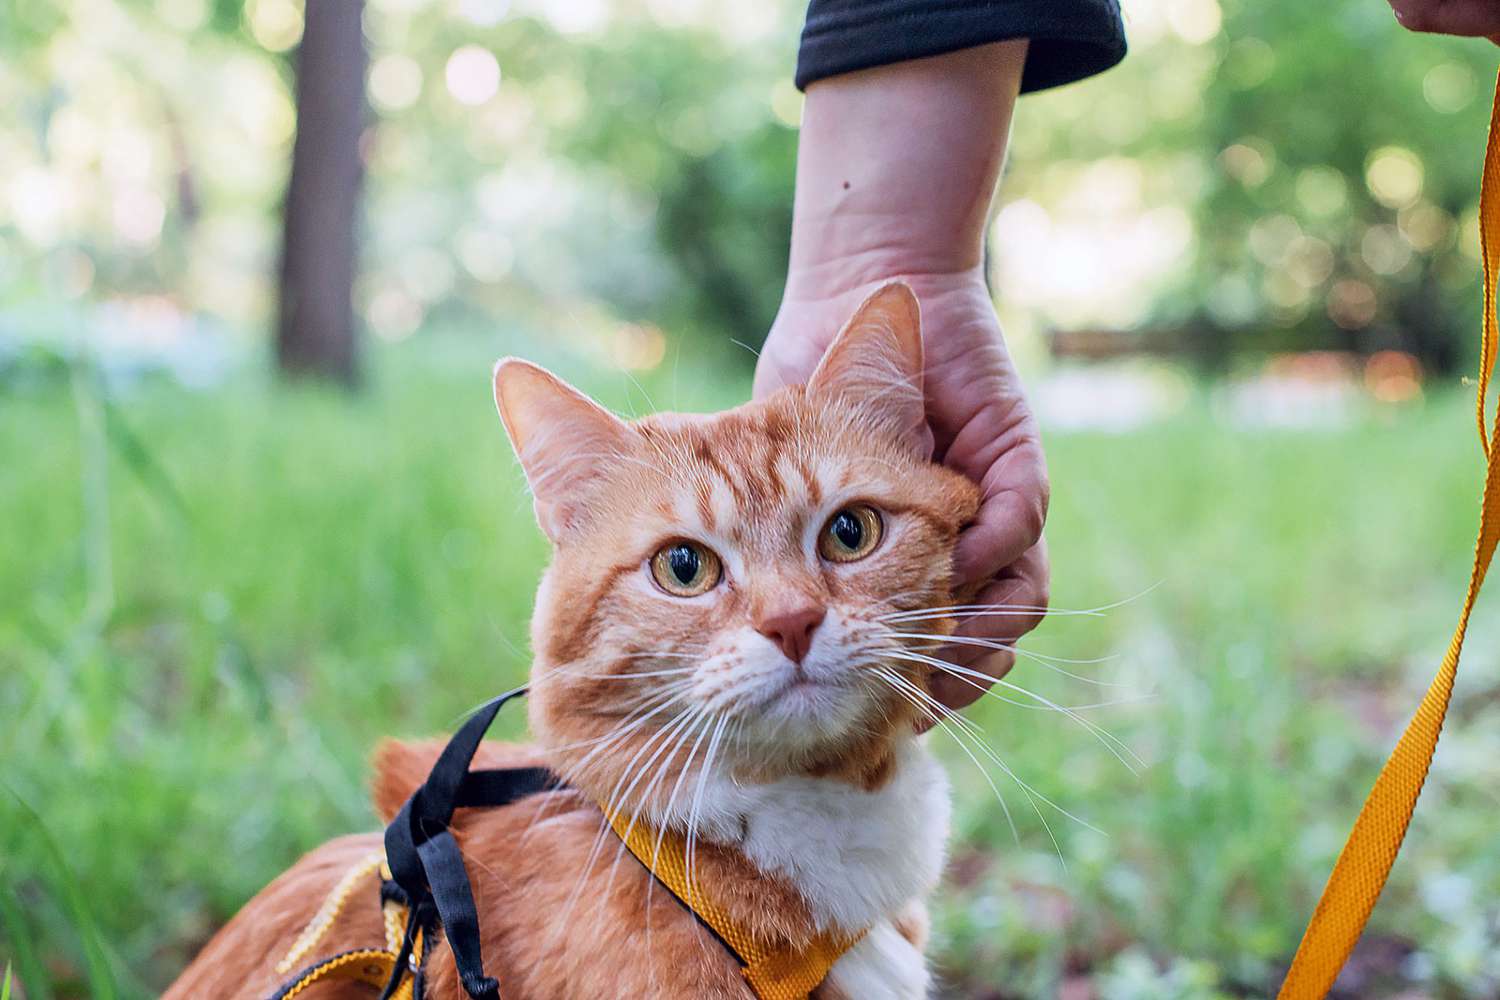 חתול ג'ינג'י בחוץ בטיול עם רתמה כתומה ליתר ביטחון